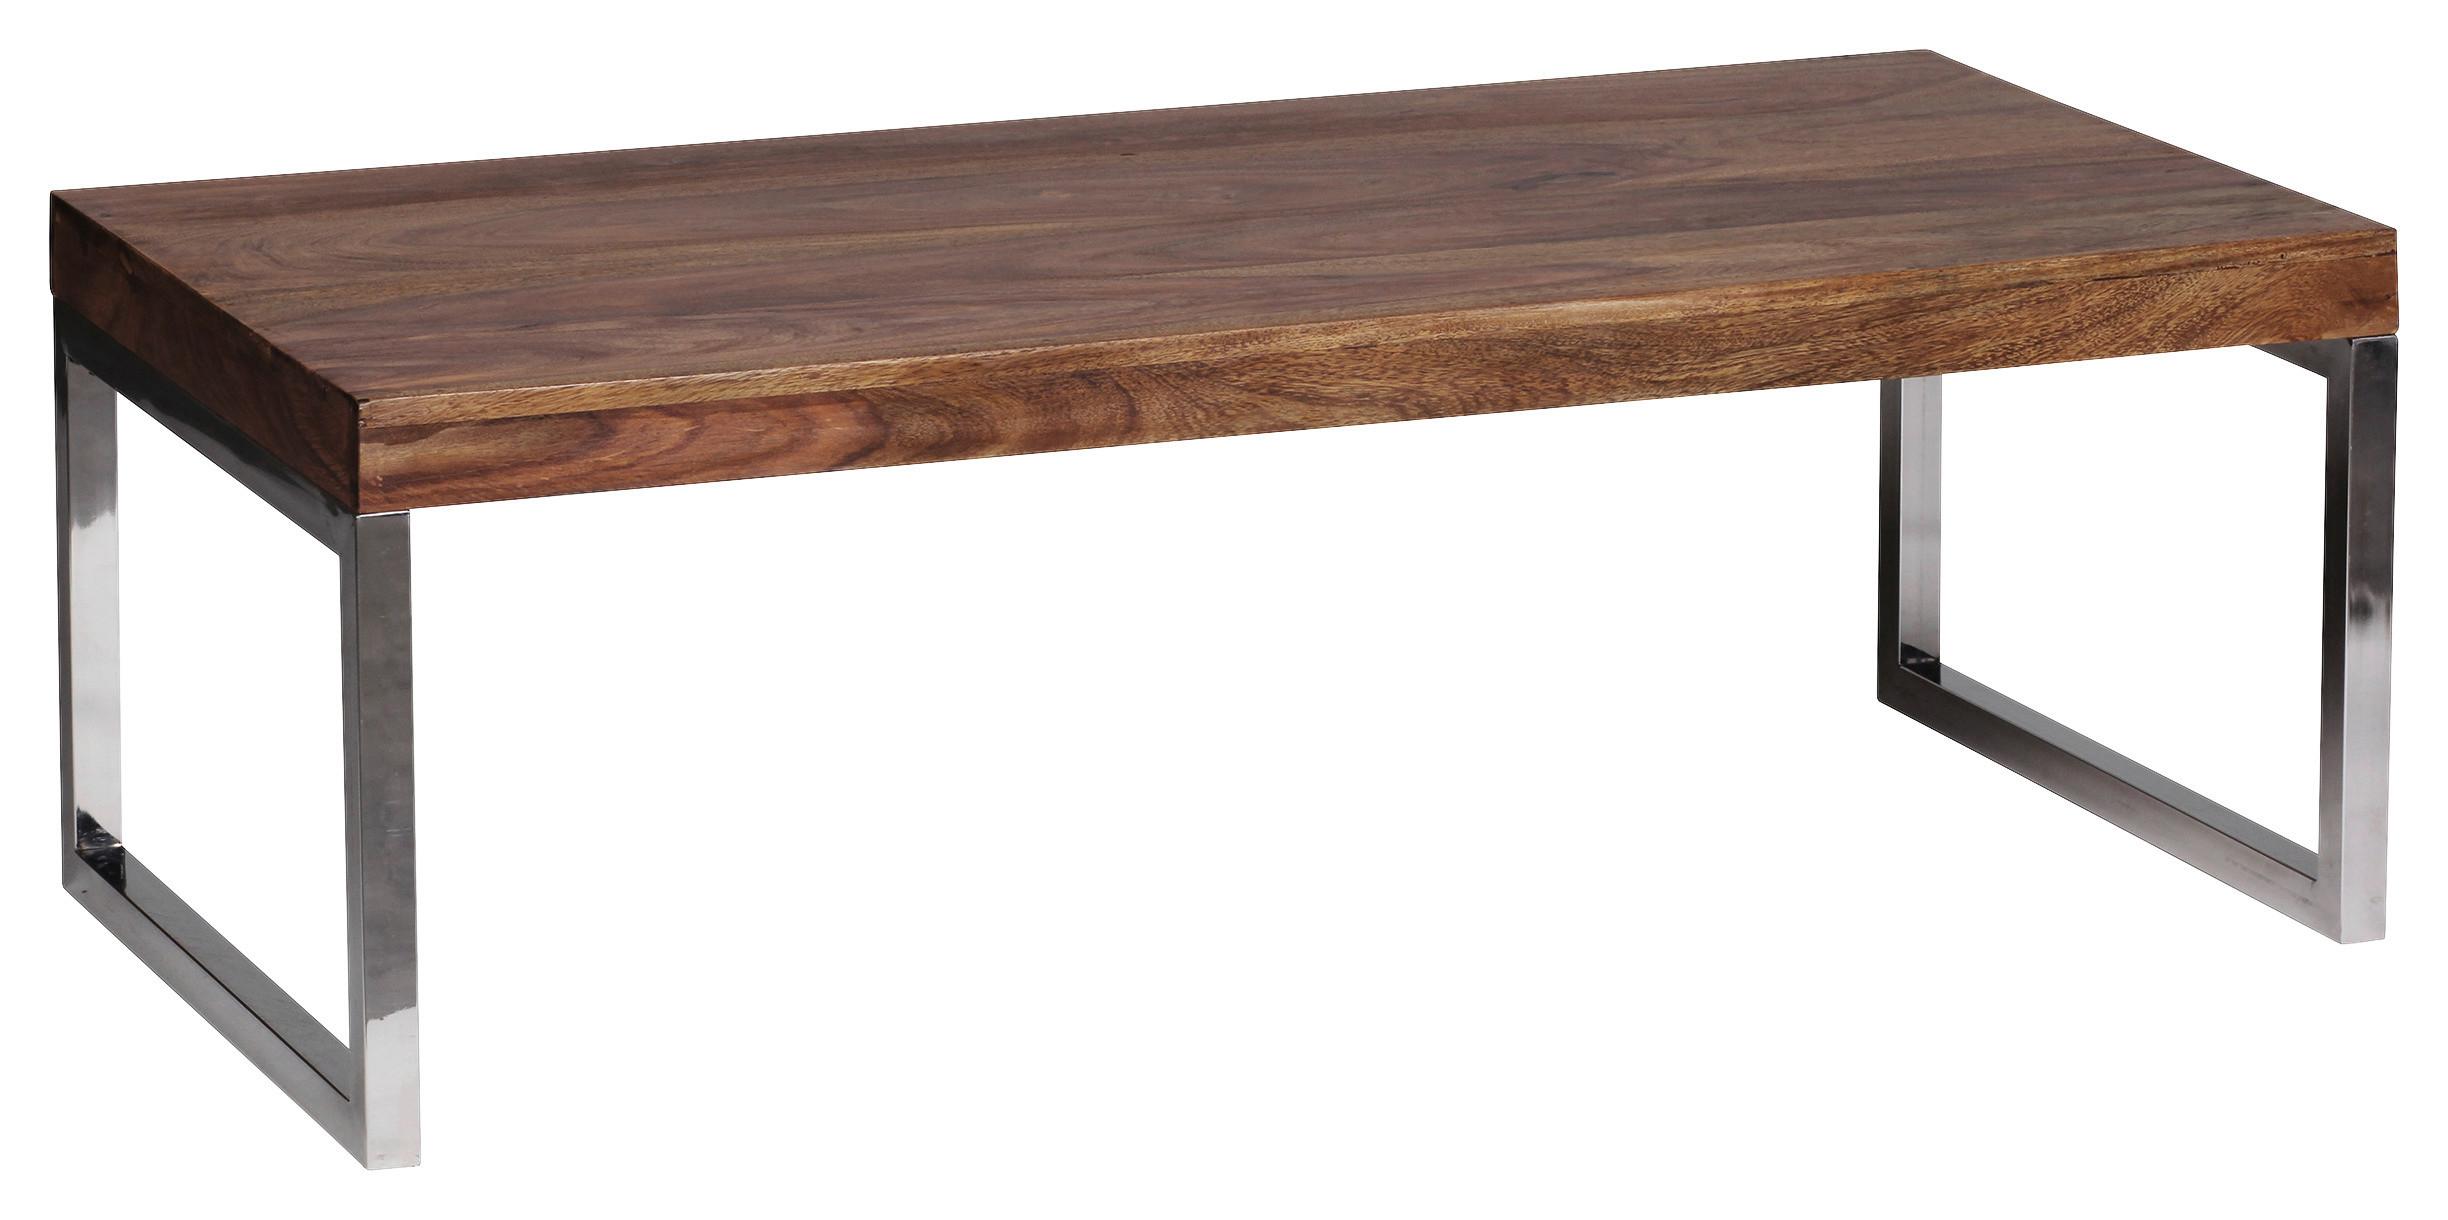 Konferenční Stolek Guna Masív - barvy sheesham/barvy chromu, Design, kov/dřevo (120/60/40cm) - MID.YOU